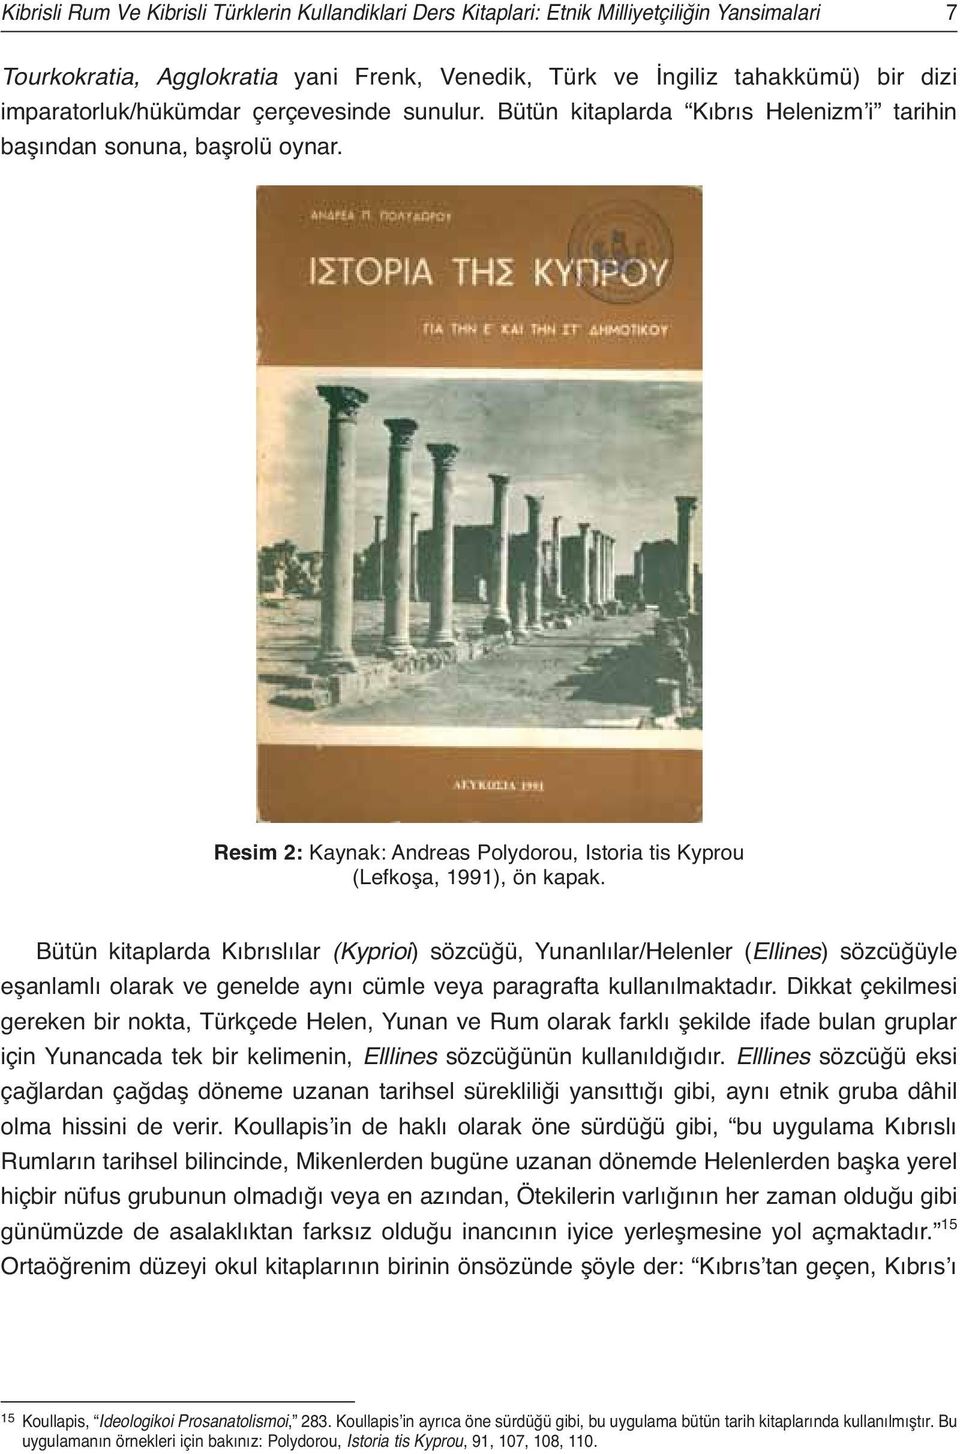 Bütün kitaplarda Kıbrıslılar (Kyprioi) sözcüğü, Yunanlılar/Helenler (Ellines) sözcüğüyle eşanlamlı olarak ve genelde aynı cümle veya paragrafta kullanılmaktadır.